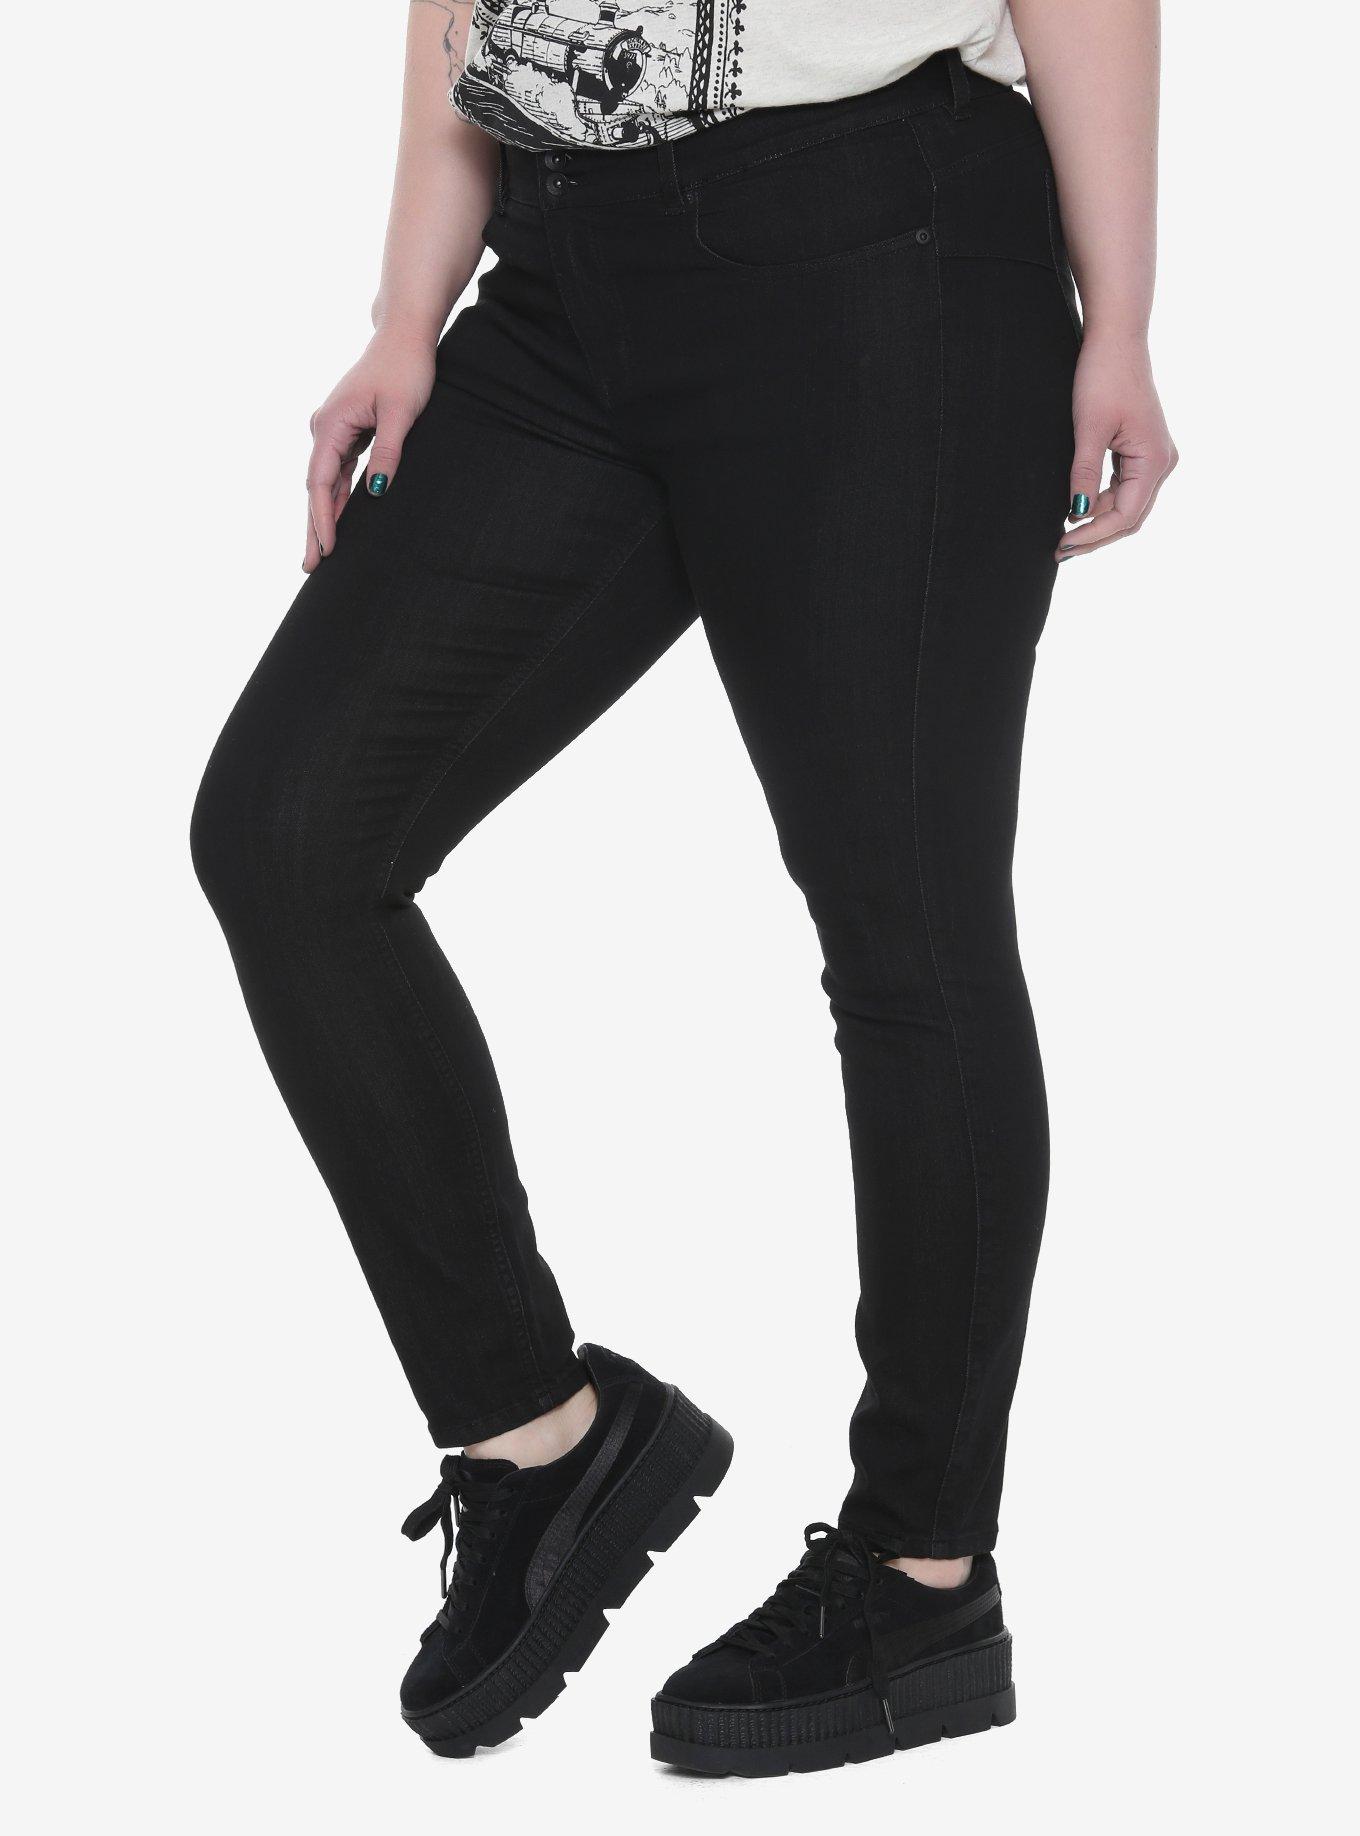 Blackheart Black Super Skinny Jeans Plus Size, BLACK, hi-res